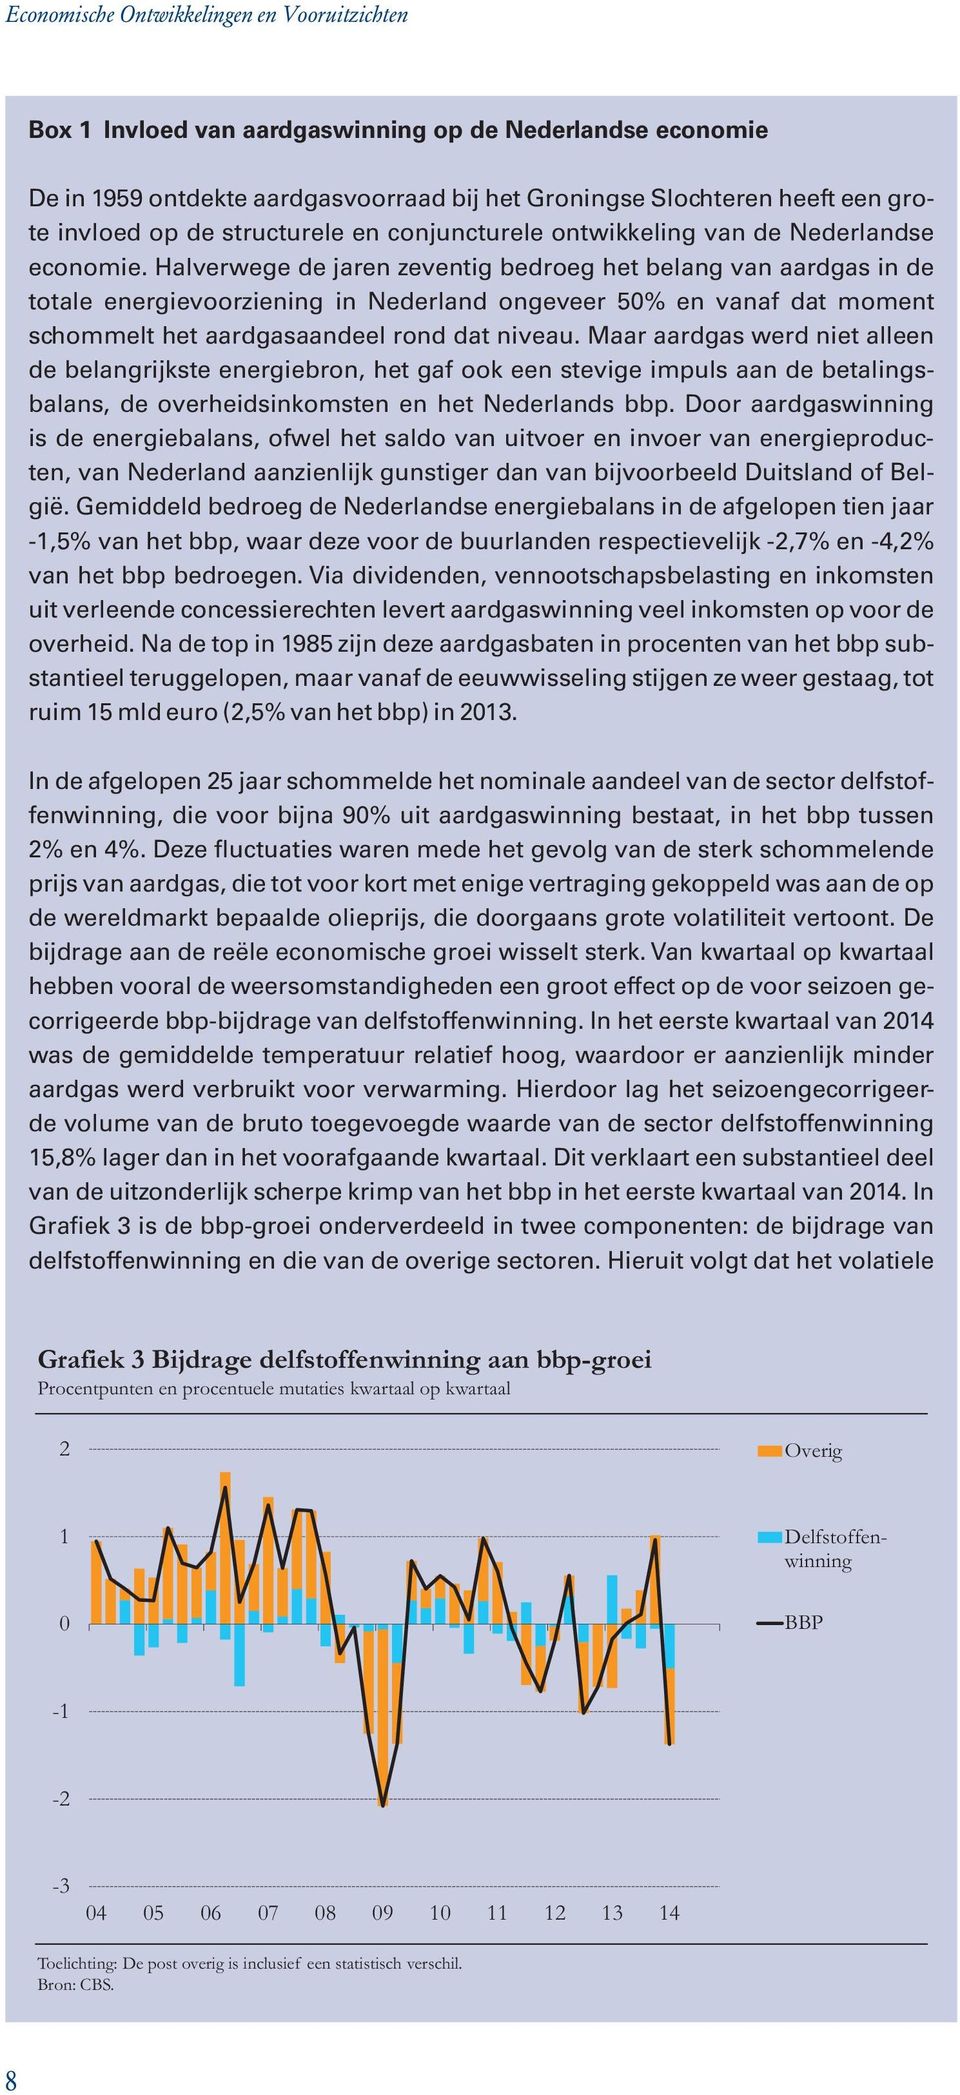 Halverwege de jaren zeventig bedroeg het belang van aardgas in de totale energievoorziening in Nederland ongeveer 50% en vanaf dat moment schommelt het aardgasaandeel rond dat niveau.